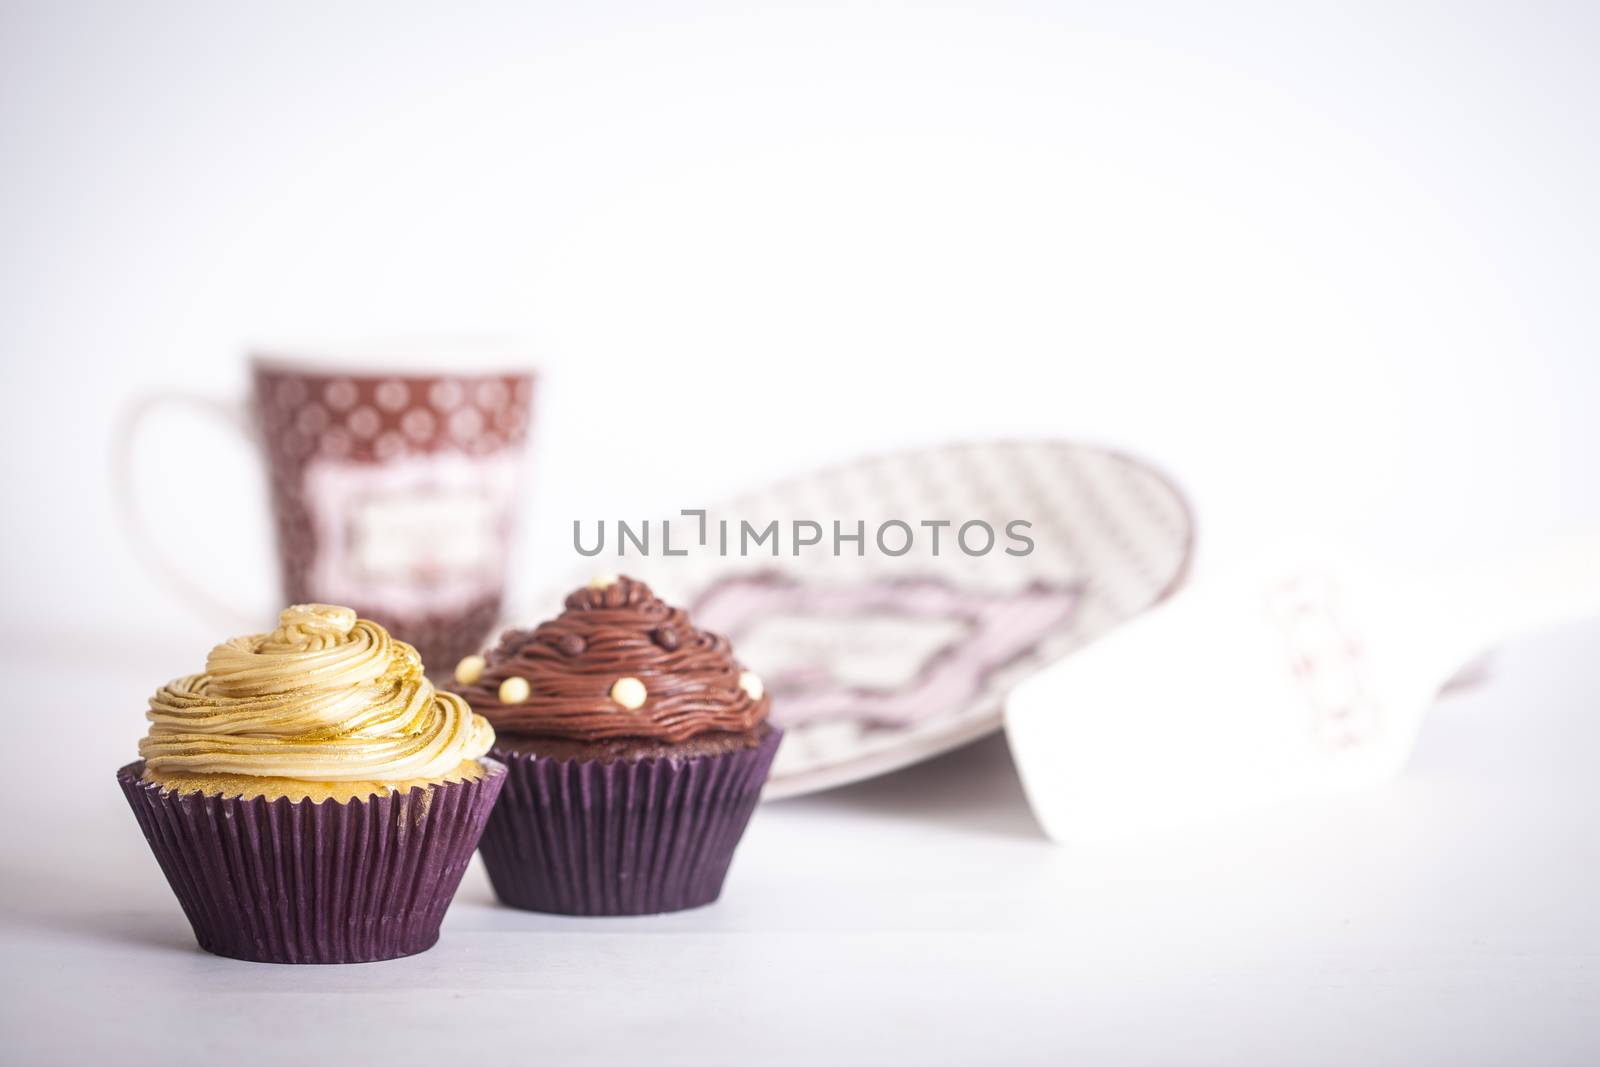 Cupcakes by Daniel_Wiedemann